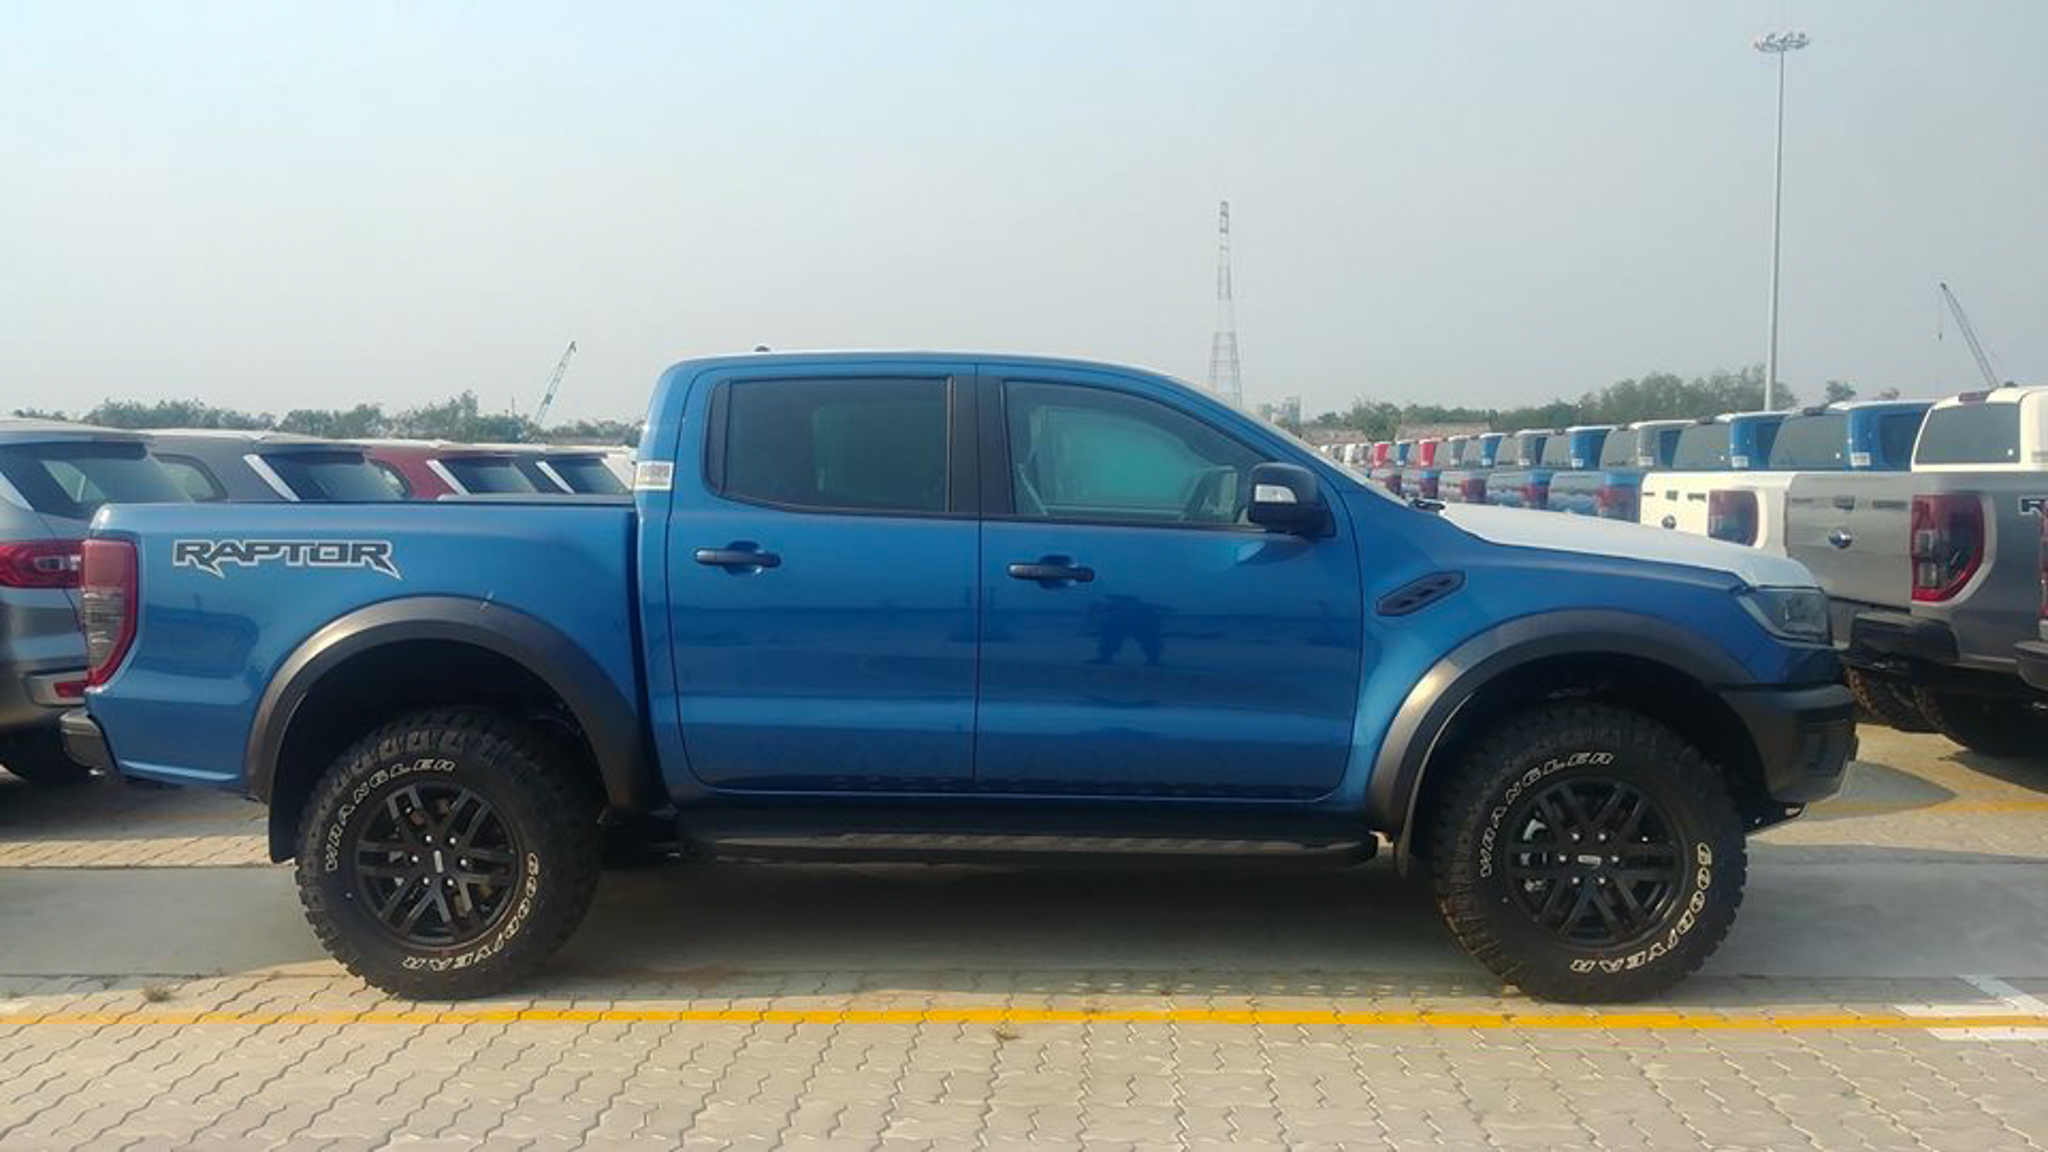 Đánh giá Ford Ranger XLS số tự động 2020 nhập khẩu Thái Lan